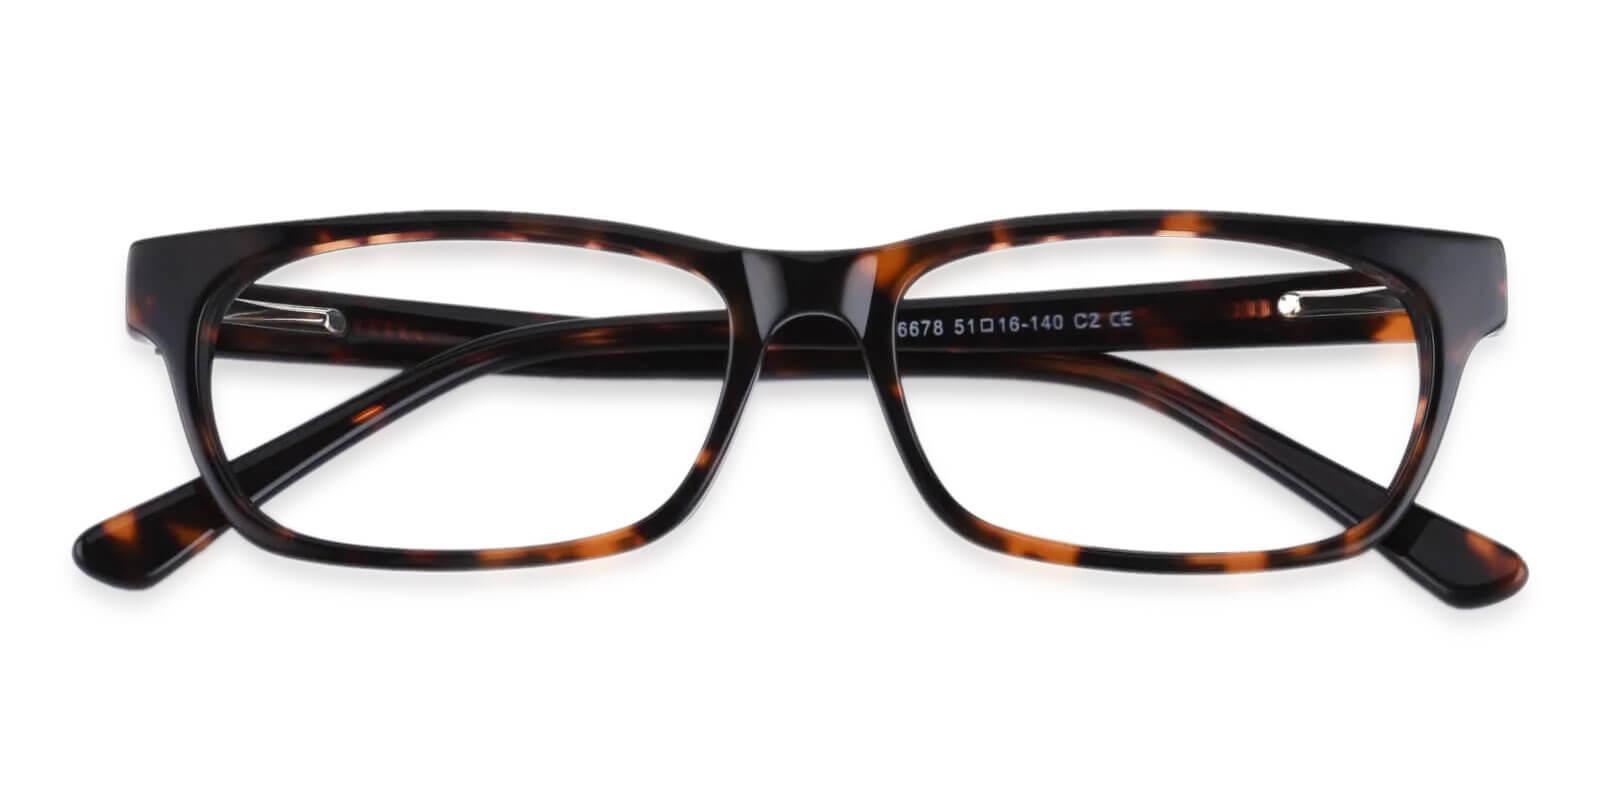 Villeneuve Tortoise TR Eyeglasses , SpringHinges , UniversalBridgeFit Frames from ABBE Glasses